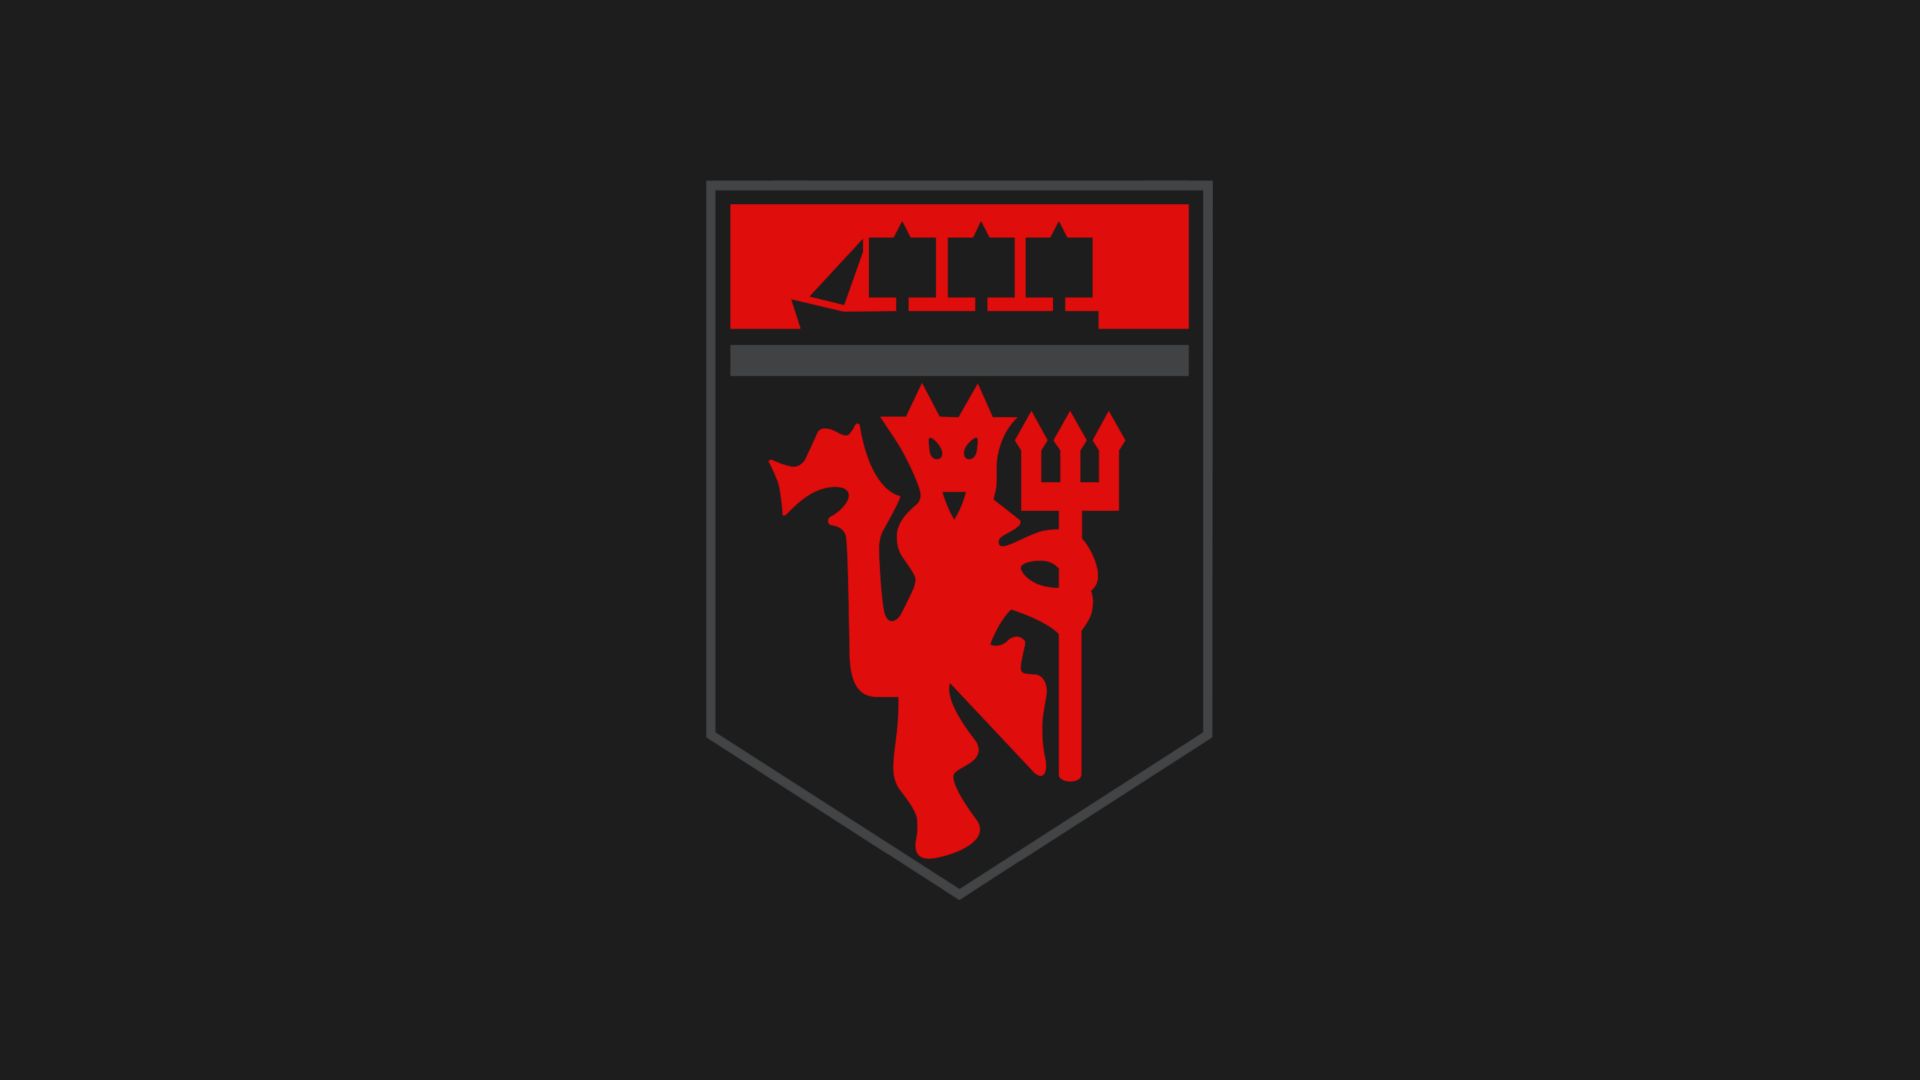 manchester united f c, symbol, sports, crest, emblem, logo, soccer 8K